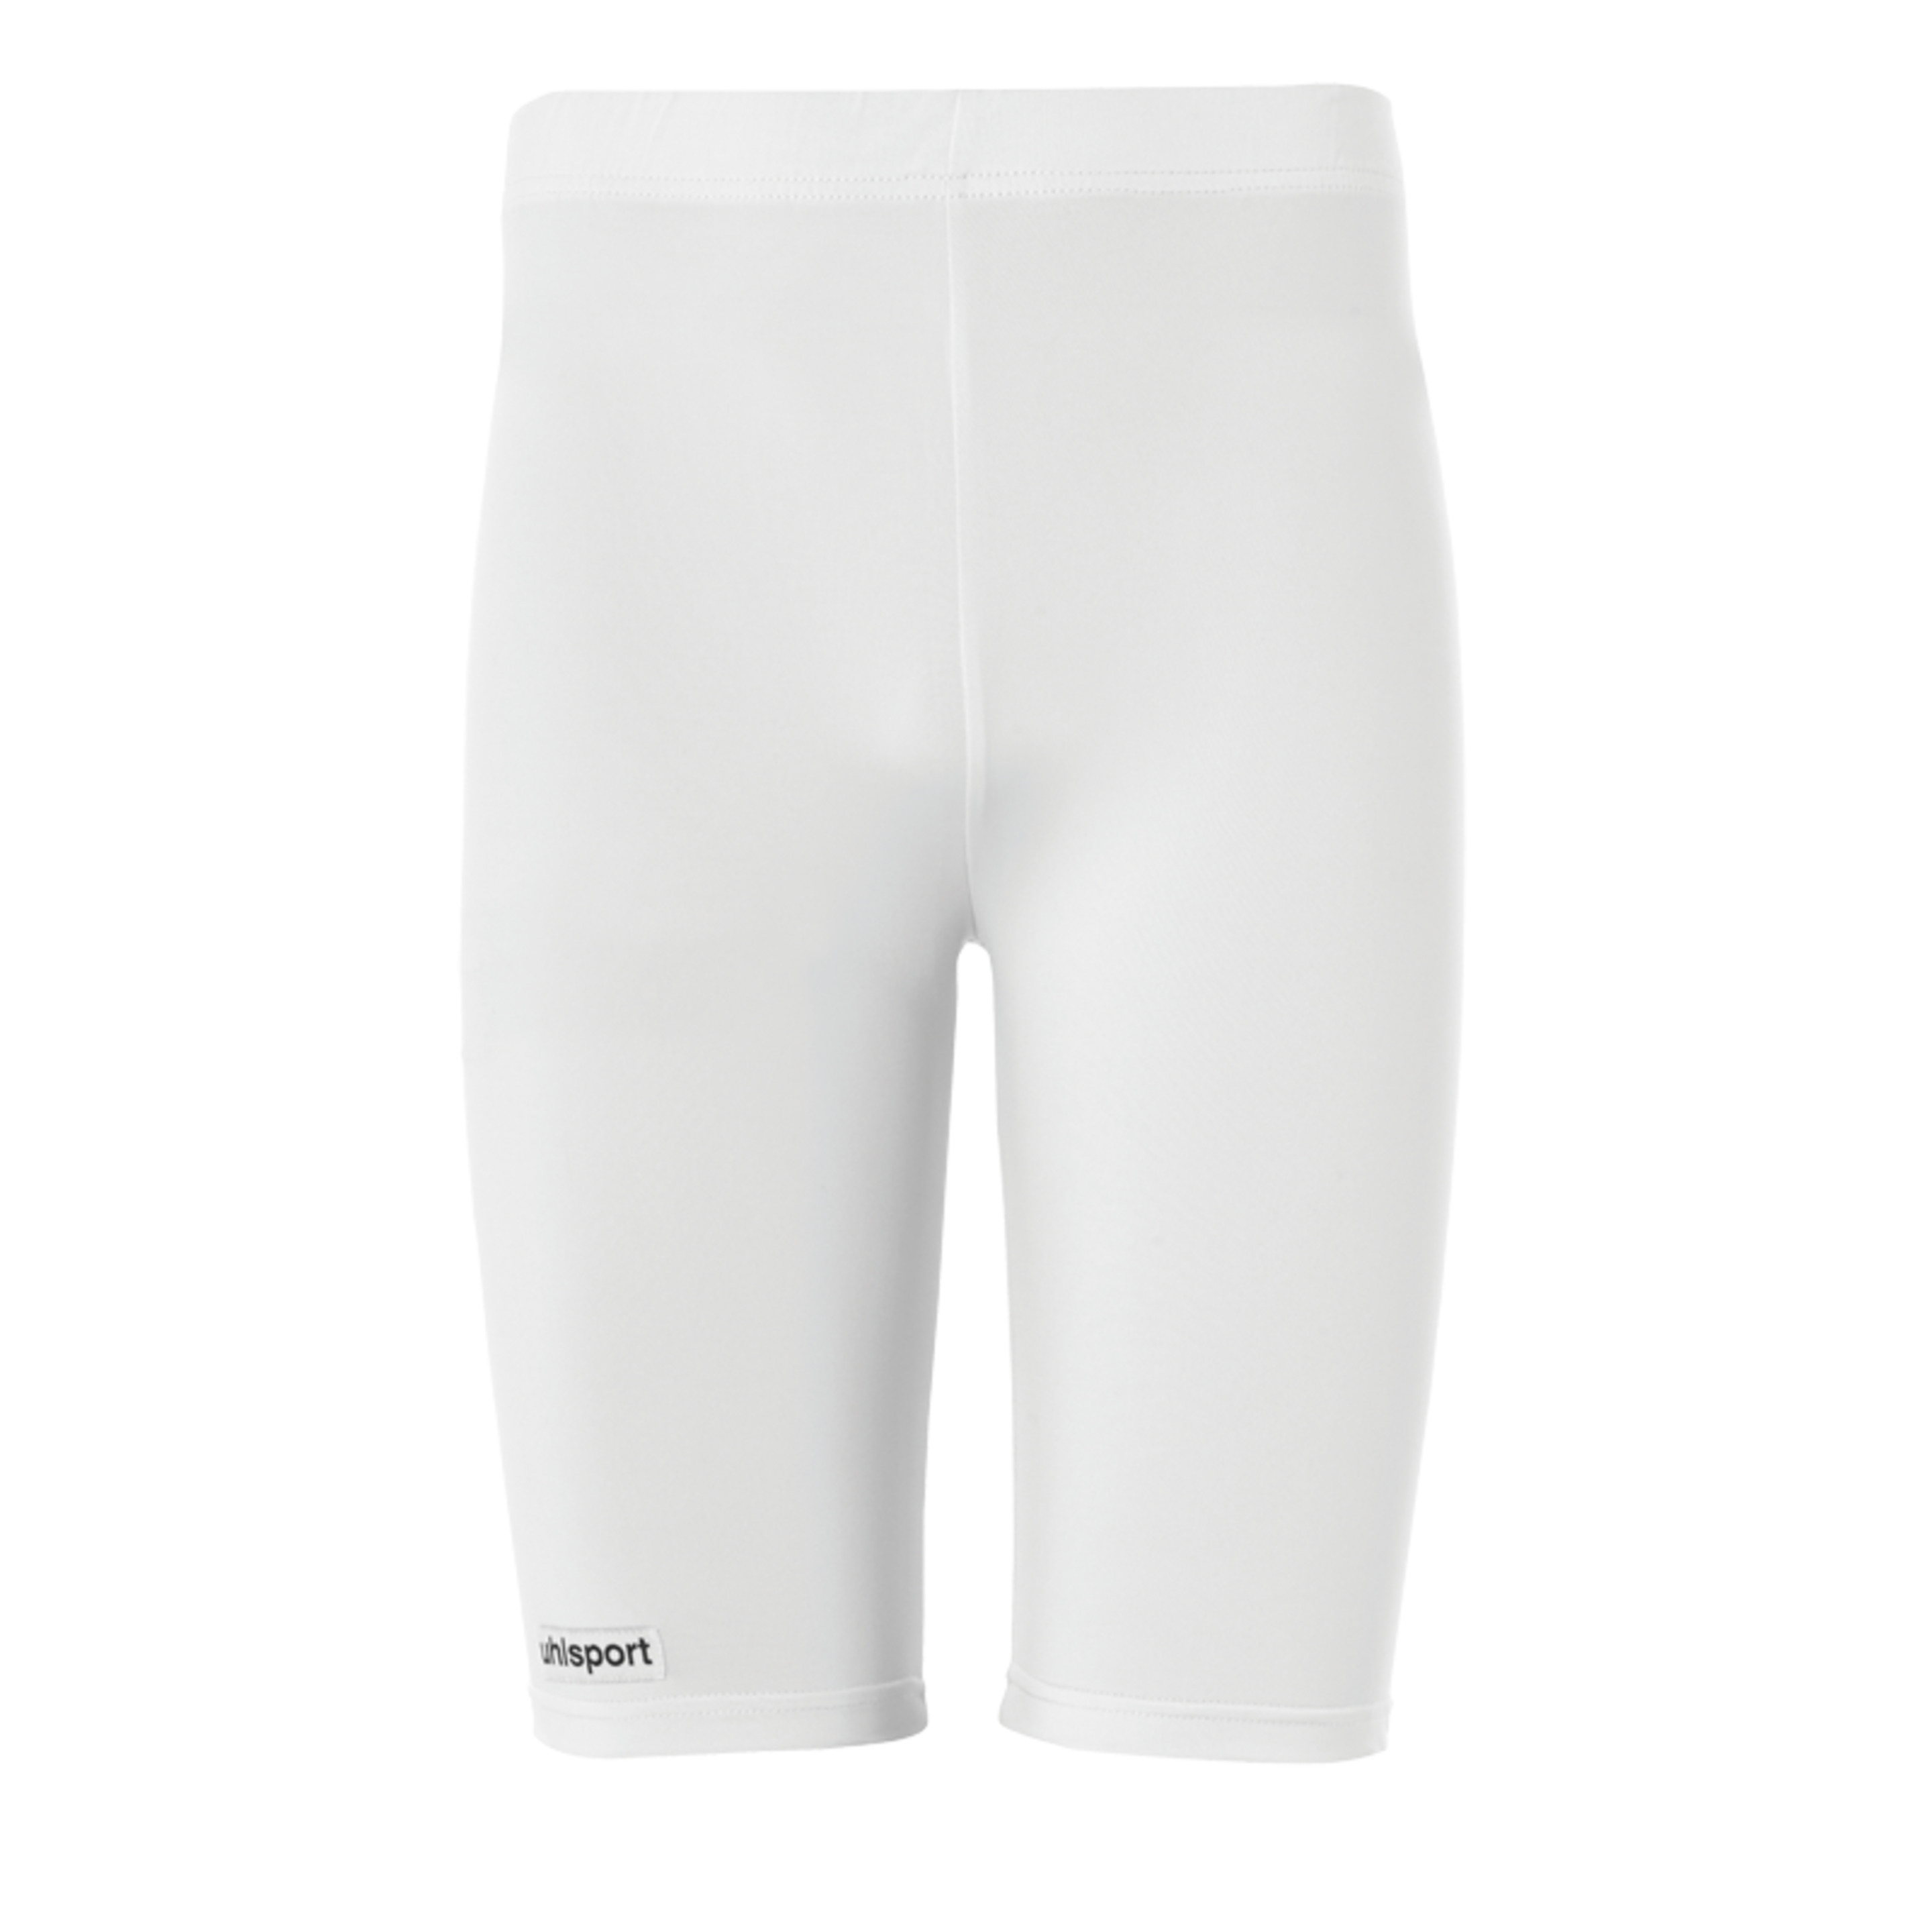 Tight Shorts Blanco Uhlsport - blanco - 